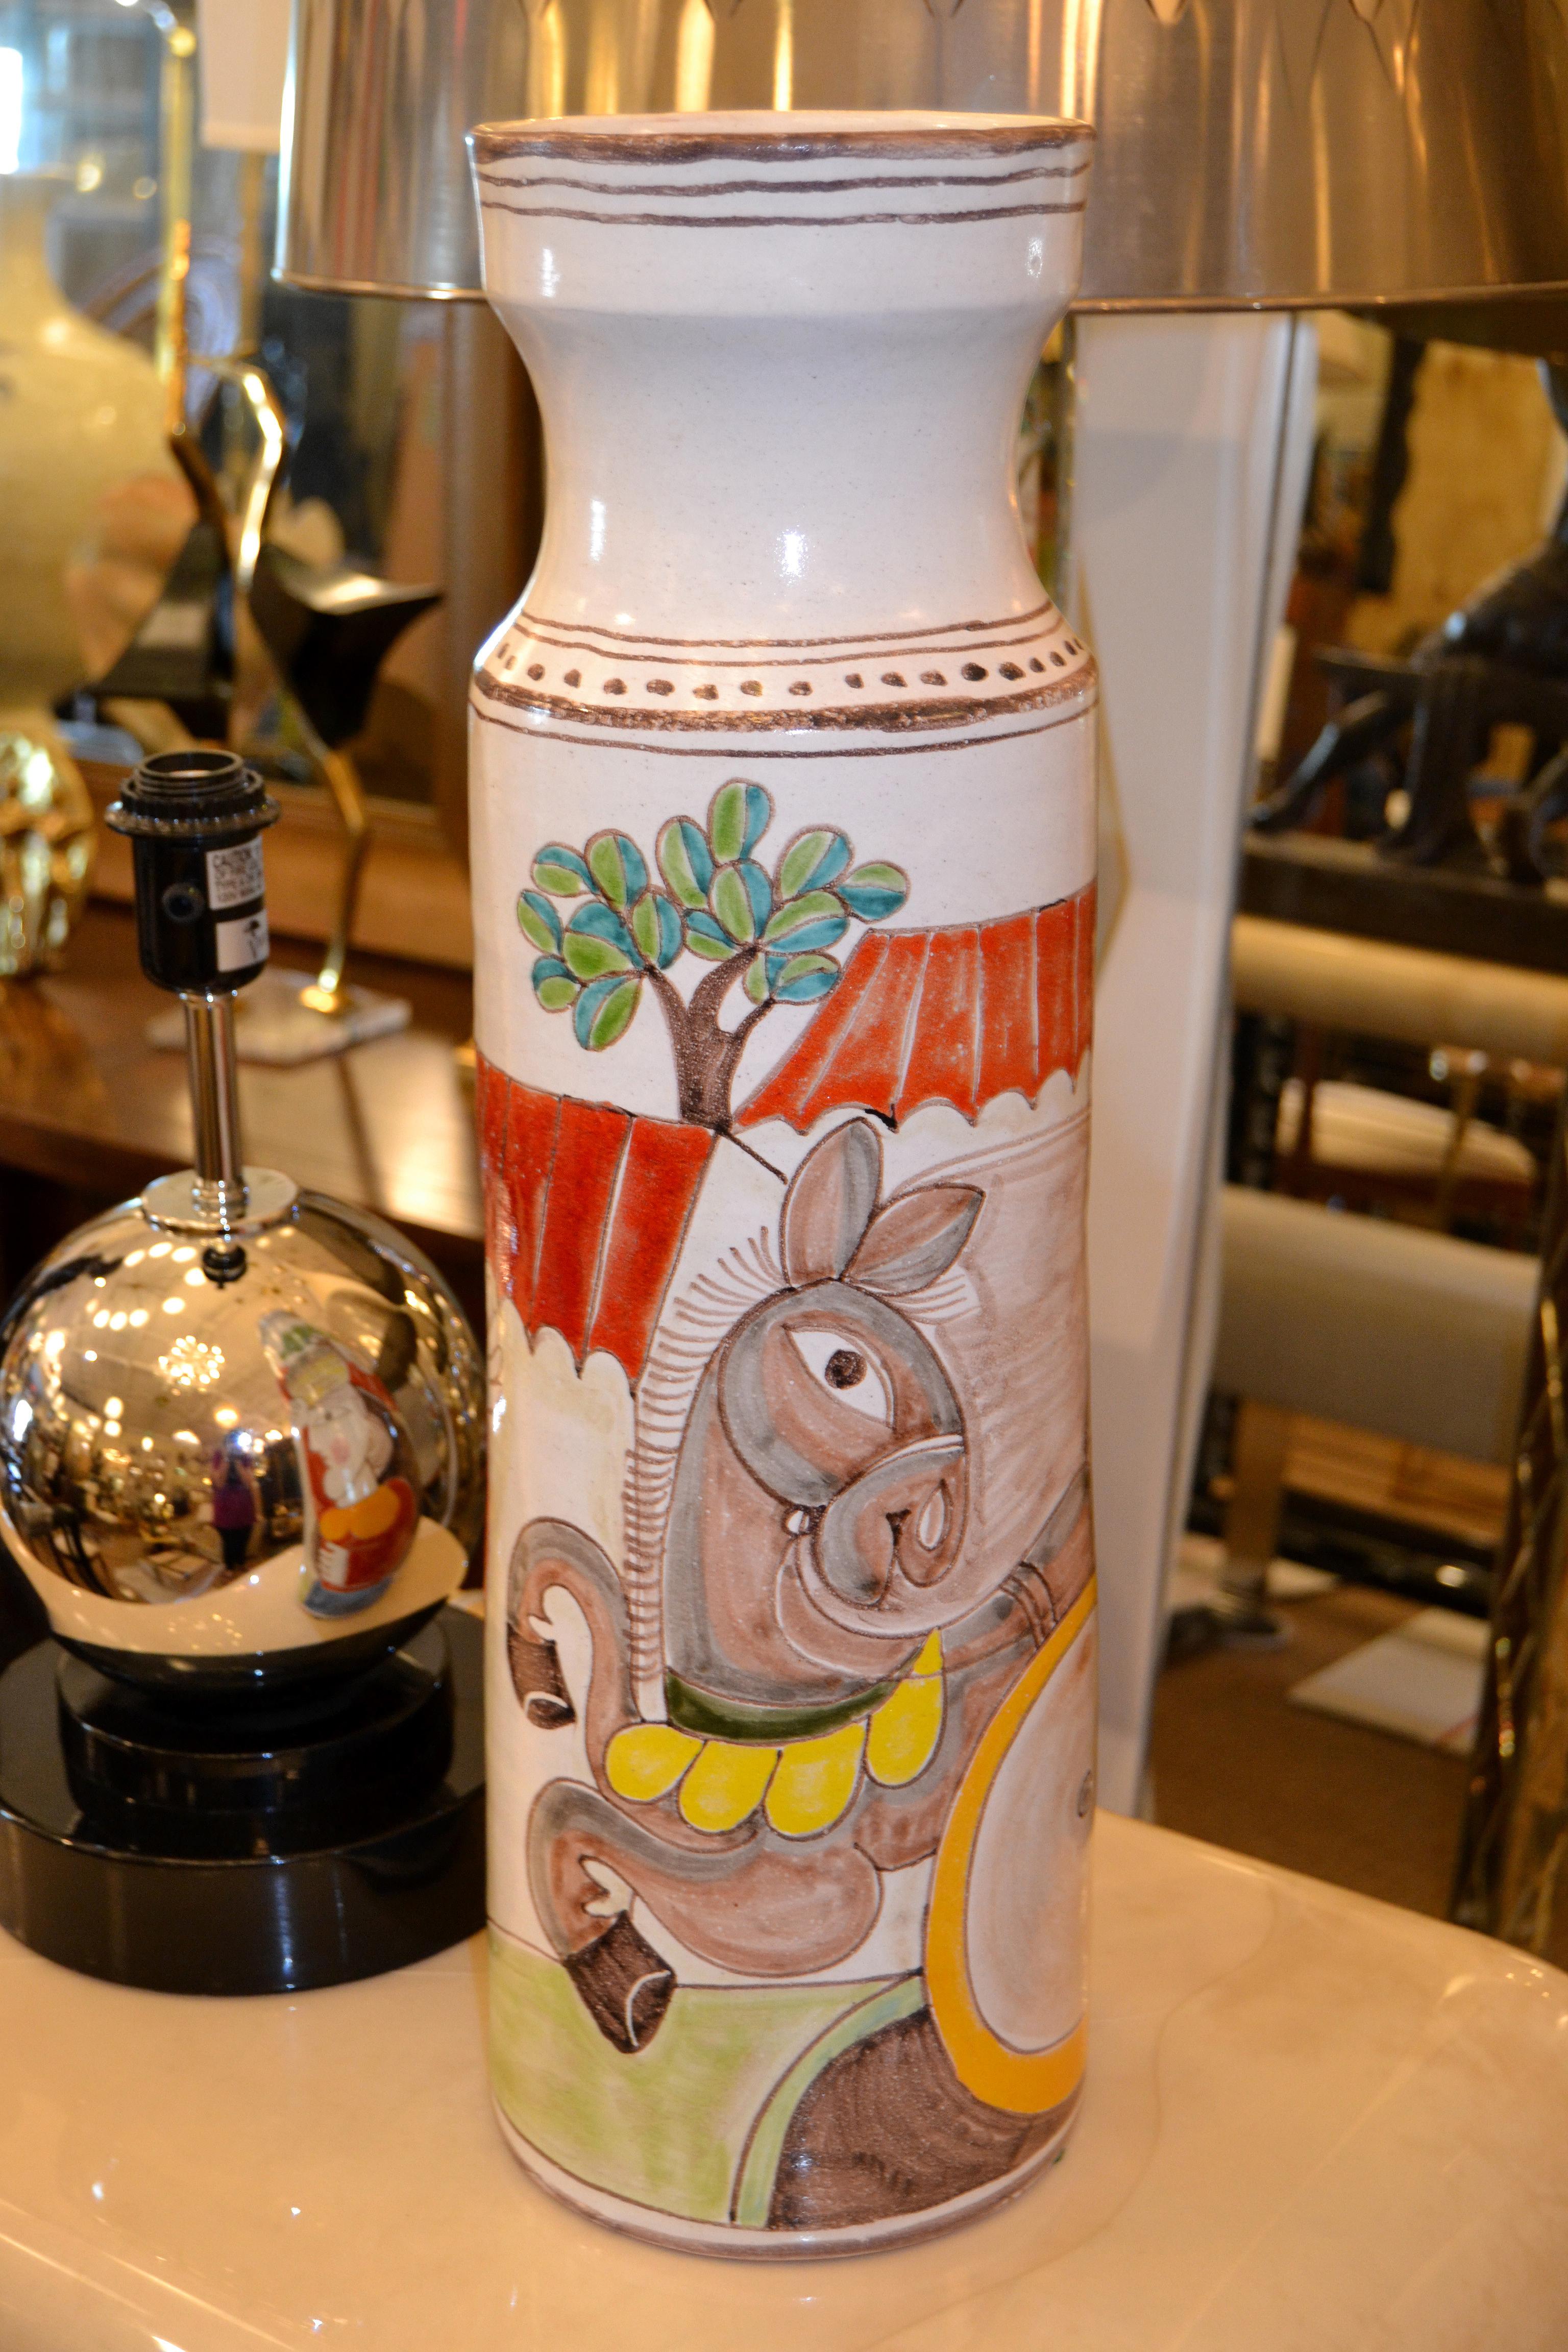 Original italien Giovanni DeSimone peint à la main grand vase de fleurs en poterie d'art, navire.
La peinture sur vase vernissé représente un homme et une femme en pleine action de cueillette d'olives avec un âne.
Marqué et numéroté sur le dessous,